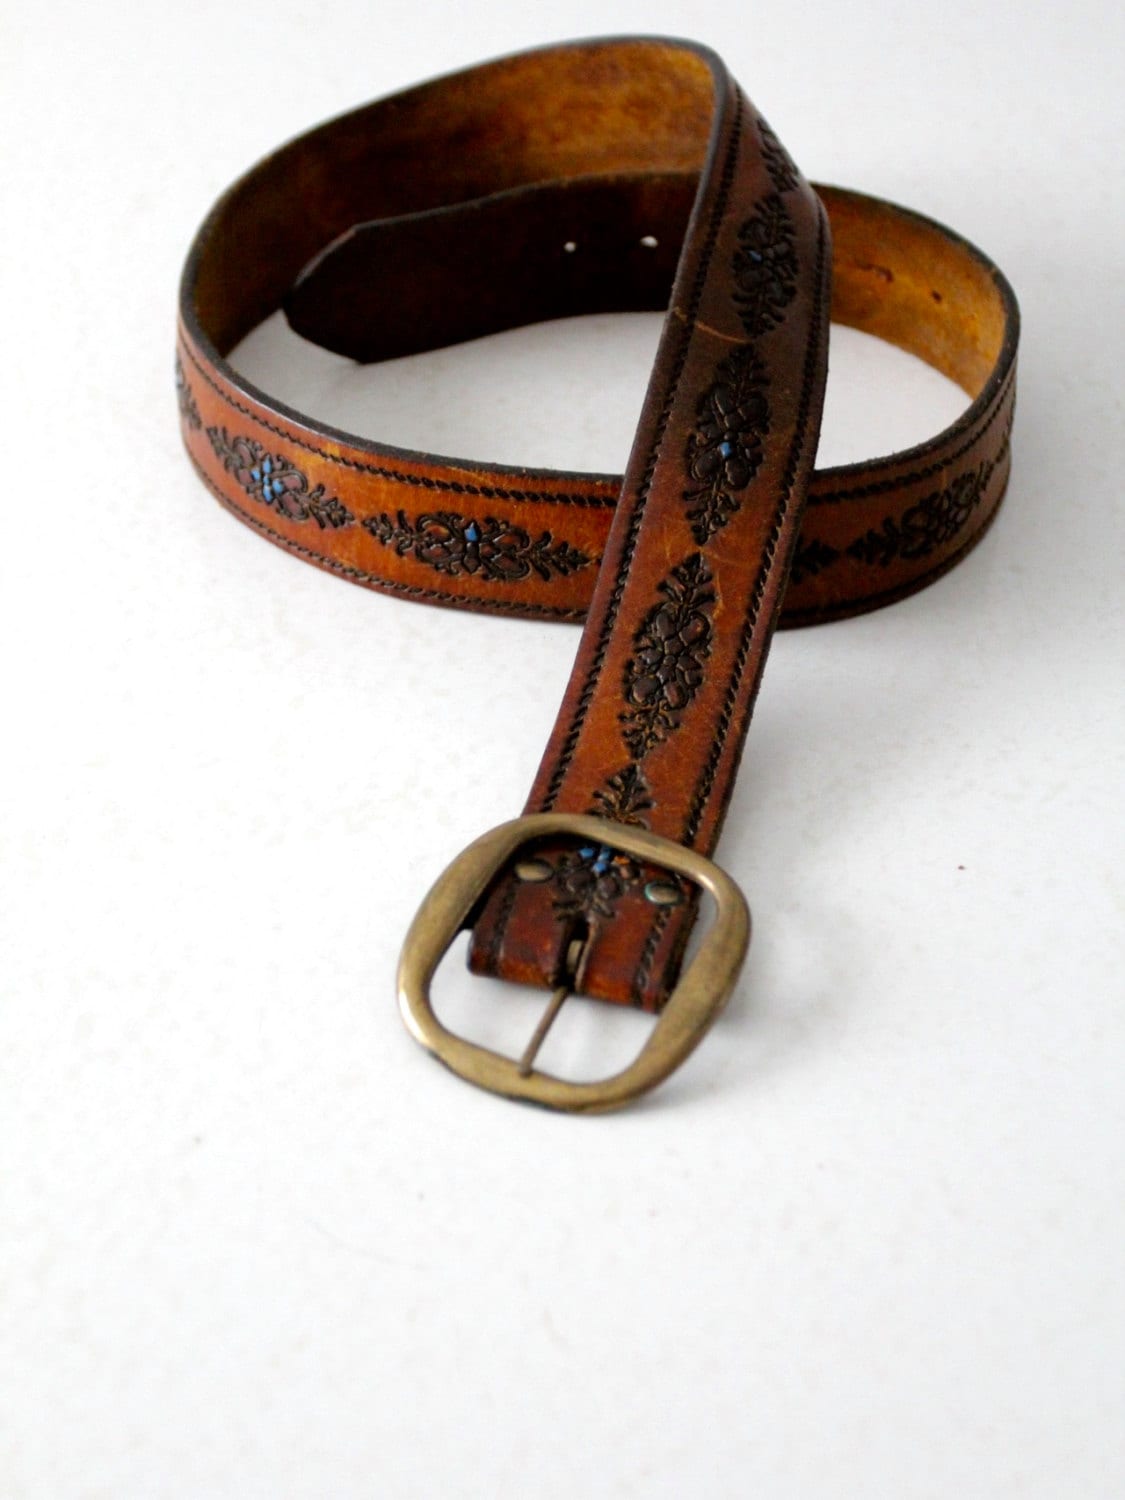 1970s Tooled Leather Belt Vintage Brown Belt With Blue Floral - Etsy